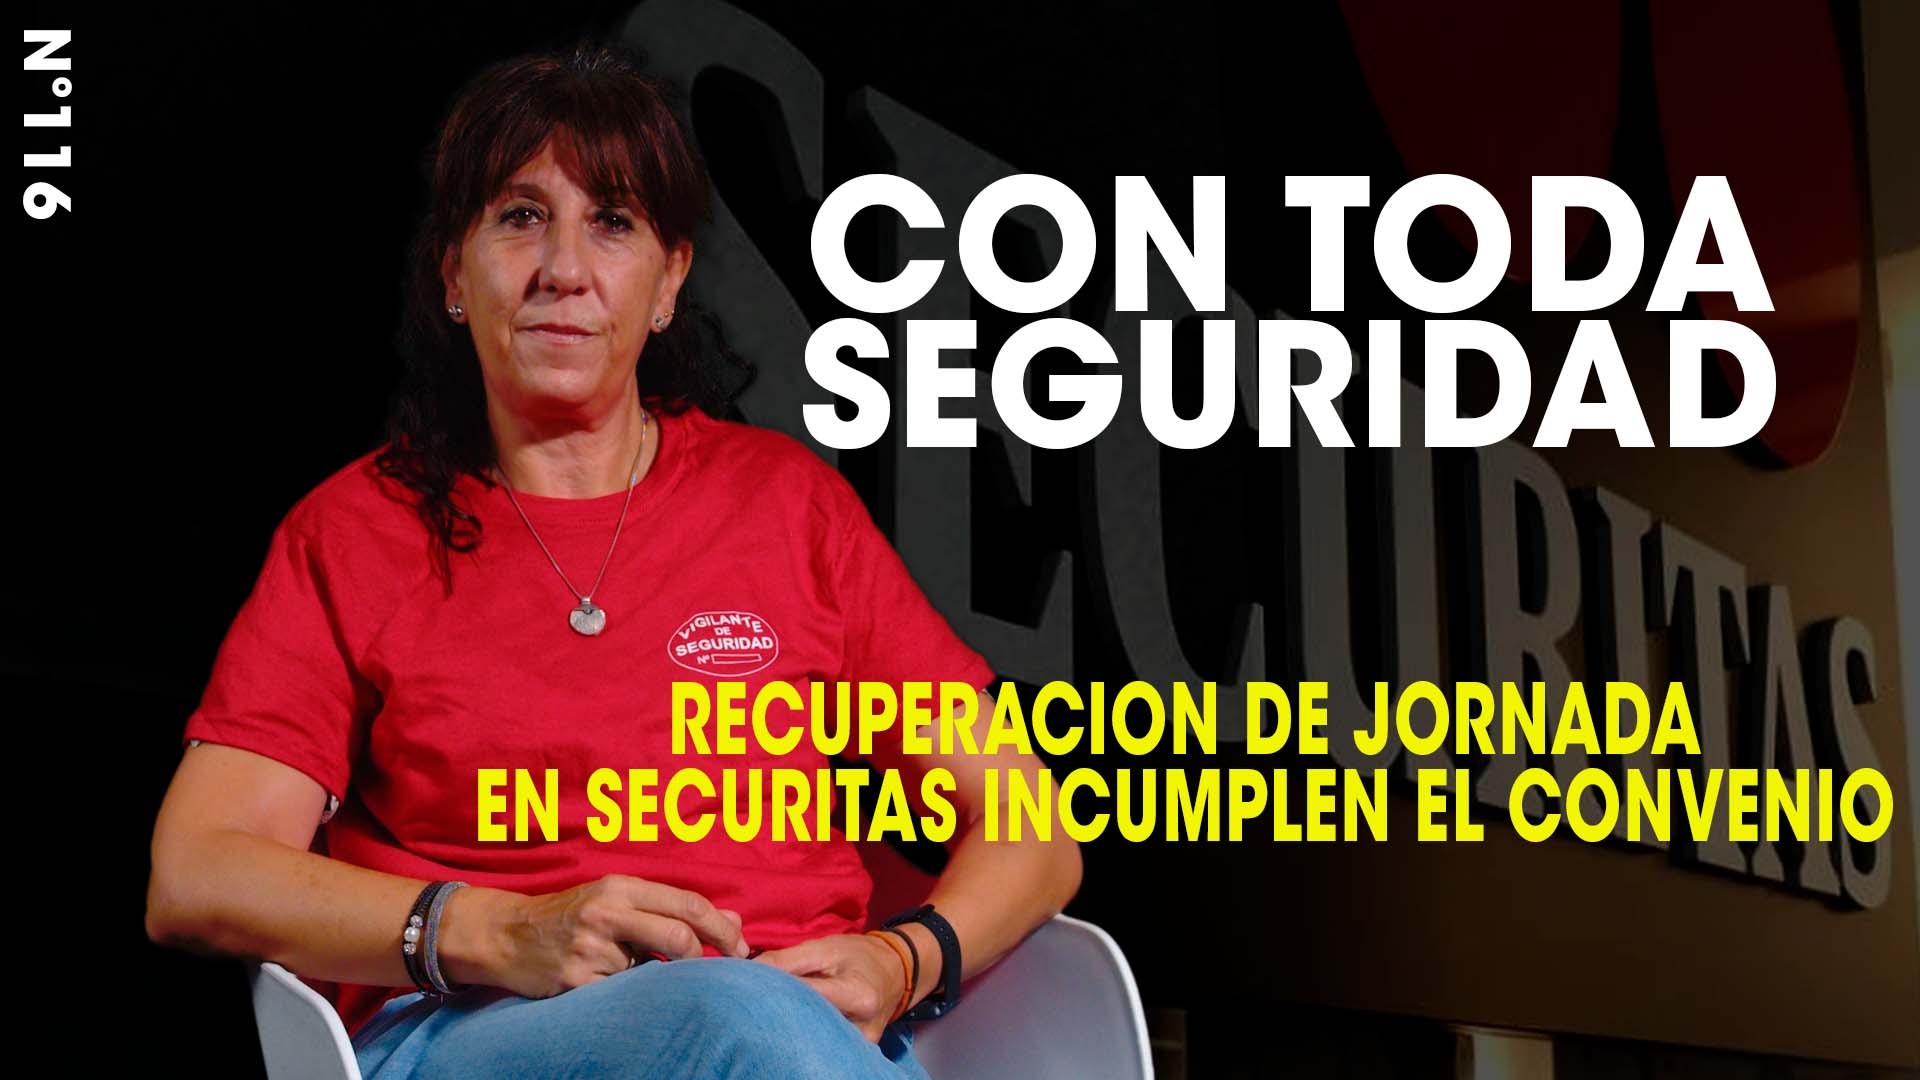 VIDEO | SECURITAS | CON TODA SEGURIDAD Nº 116 | RECUPERACION ILEGAL DE LA JORNADA